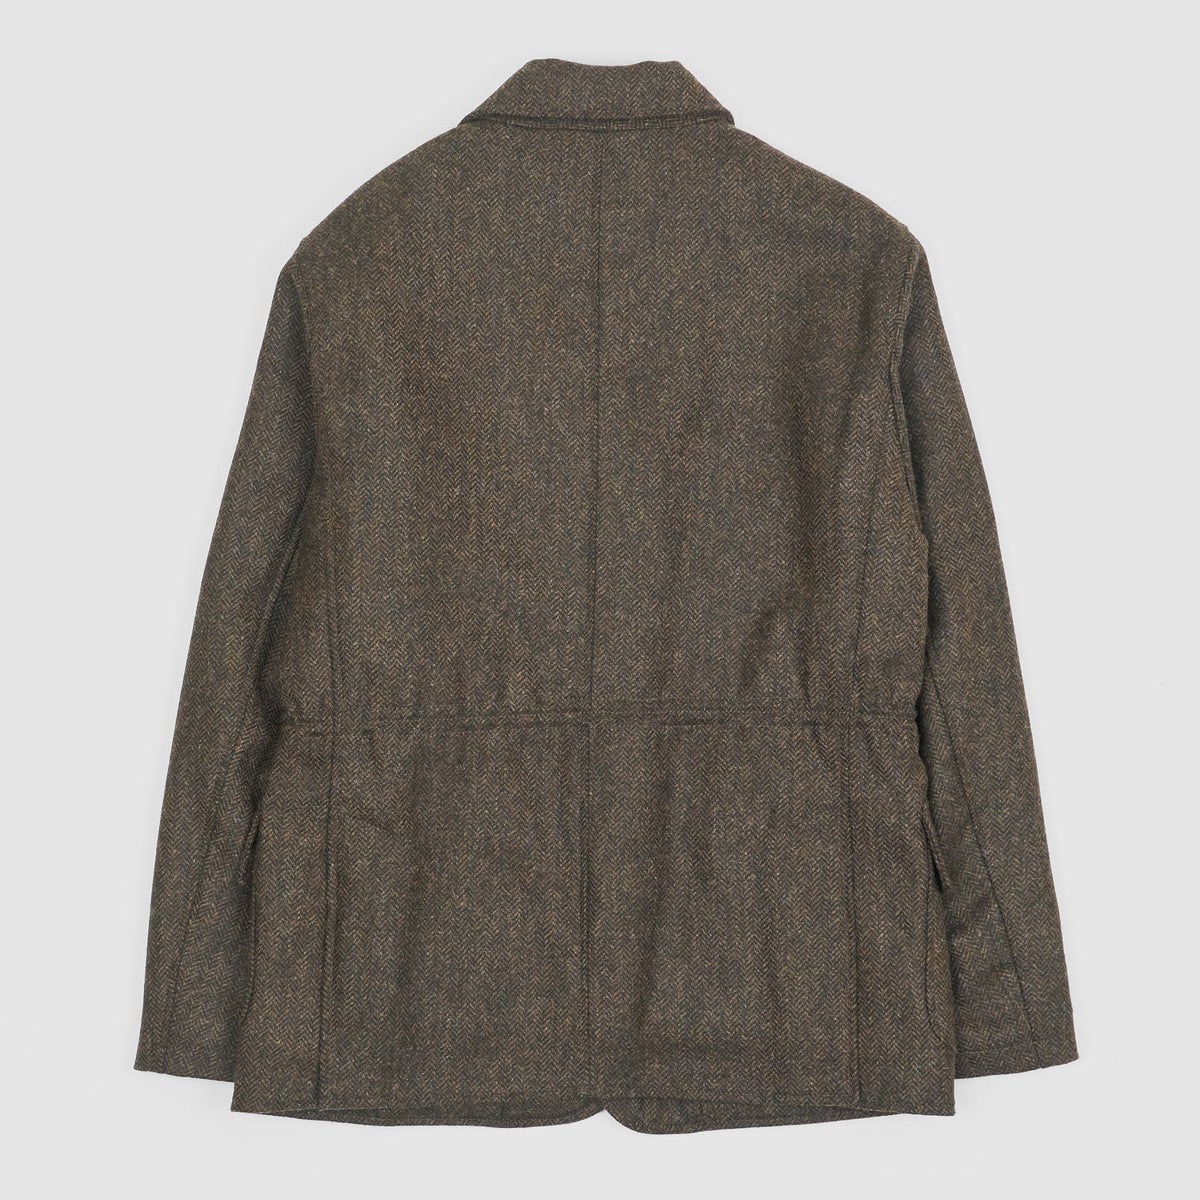 Manifattura Ceccarelli Lined Wool Blazer Jacket